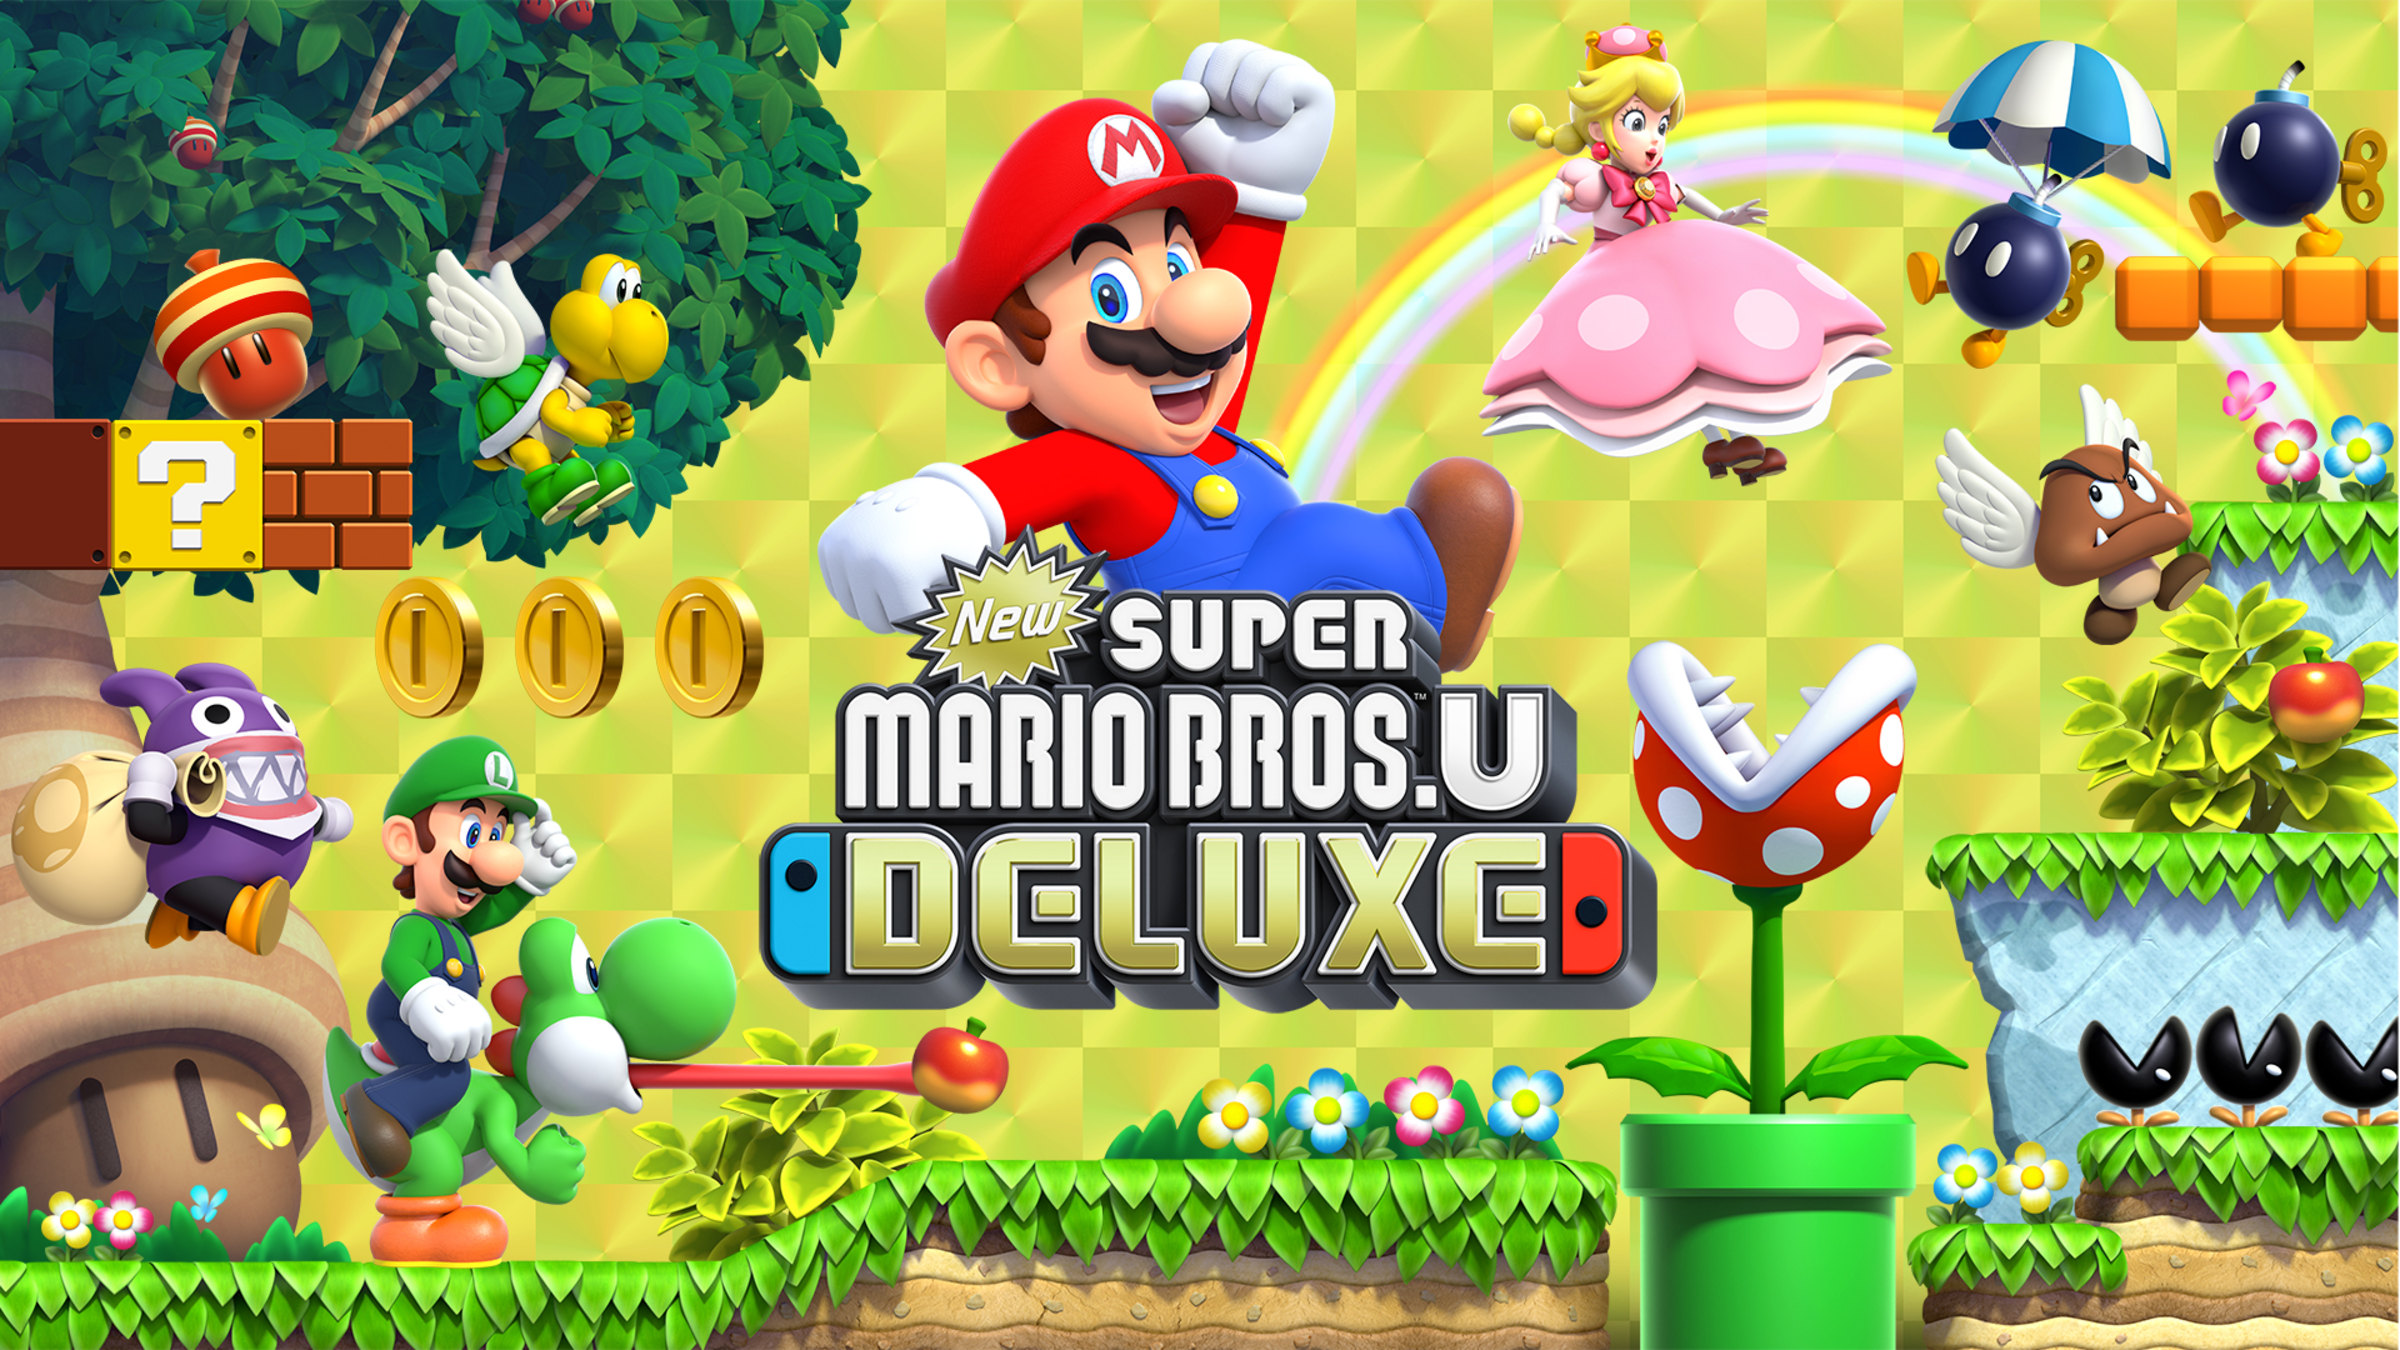 onze belasting Soepel New Super Mario Bros.™ U Deluxe for Nintendo Switch - Nintendo Official Site